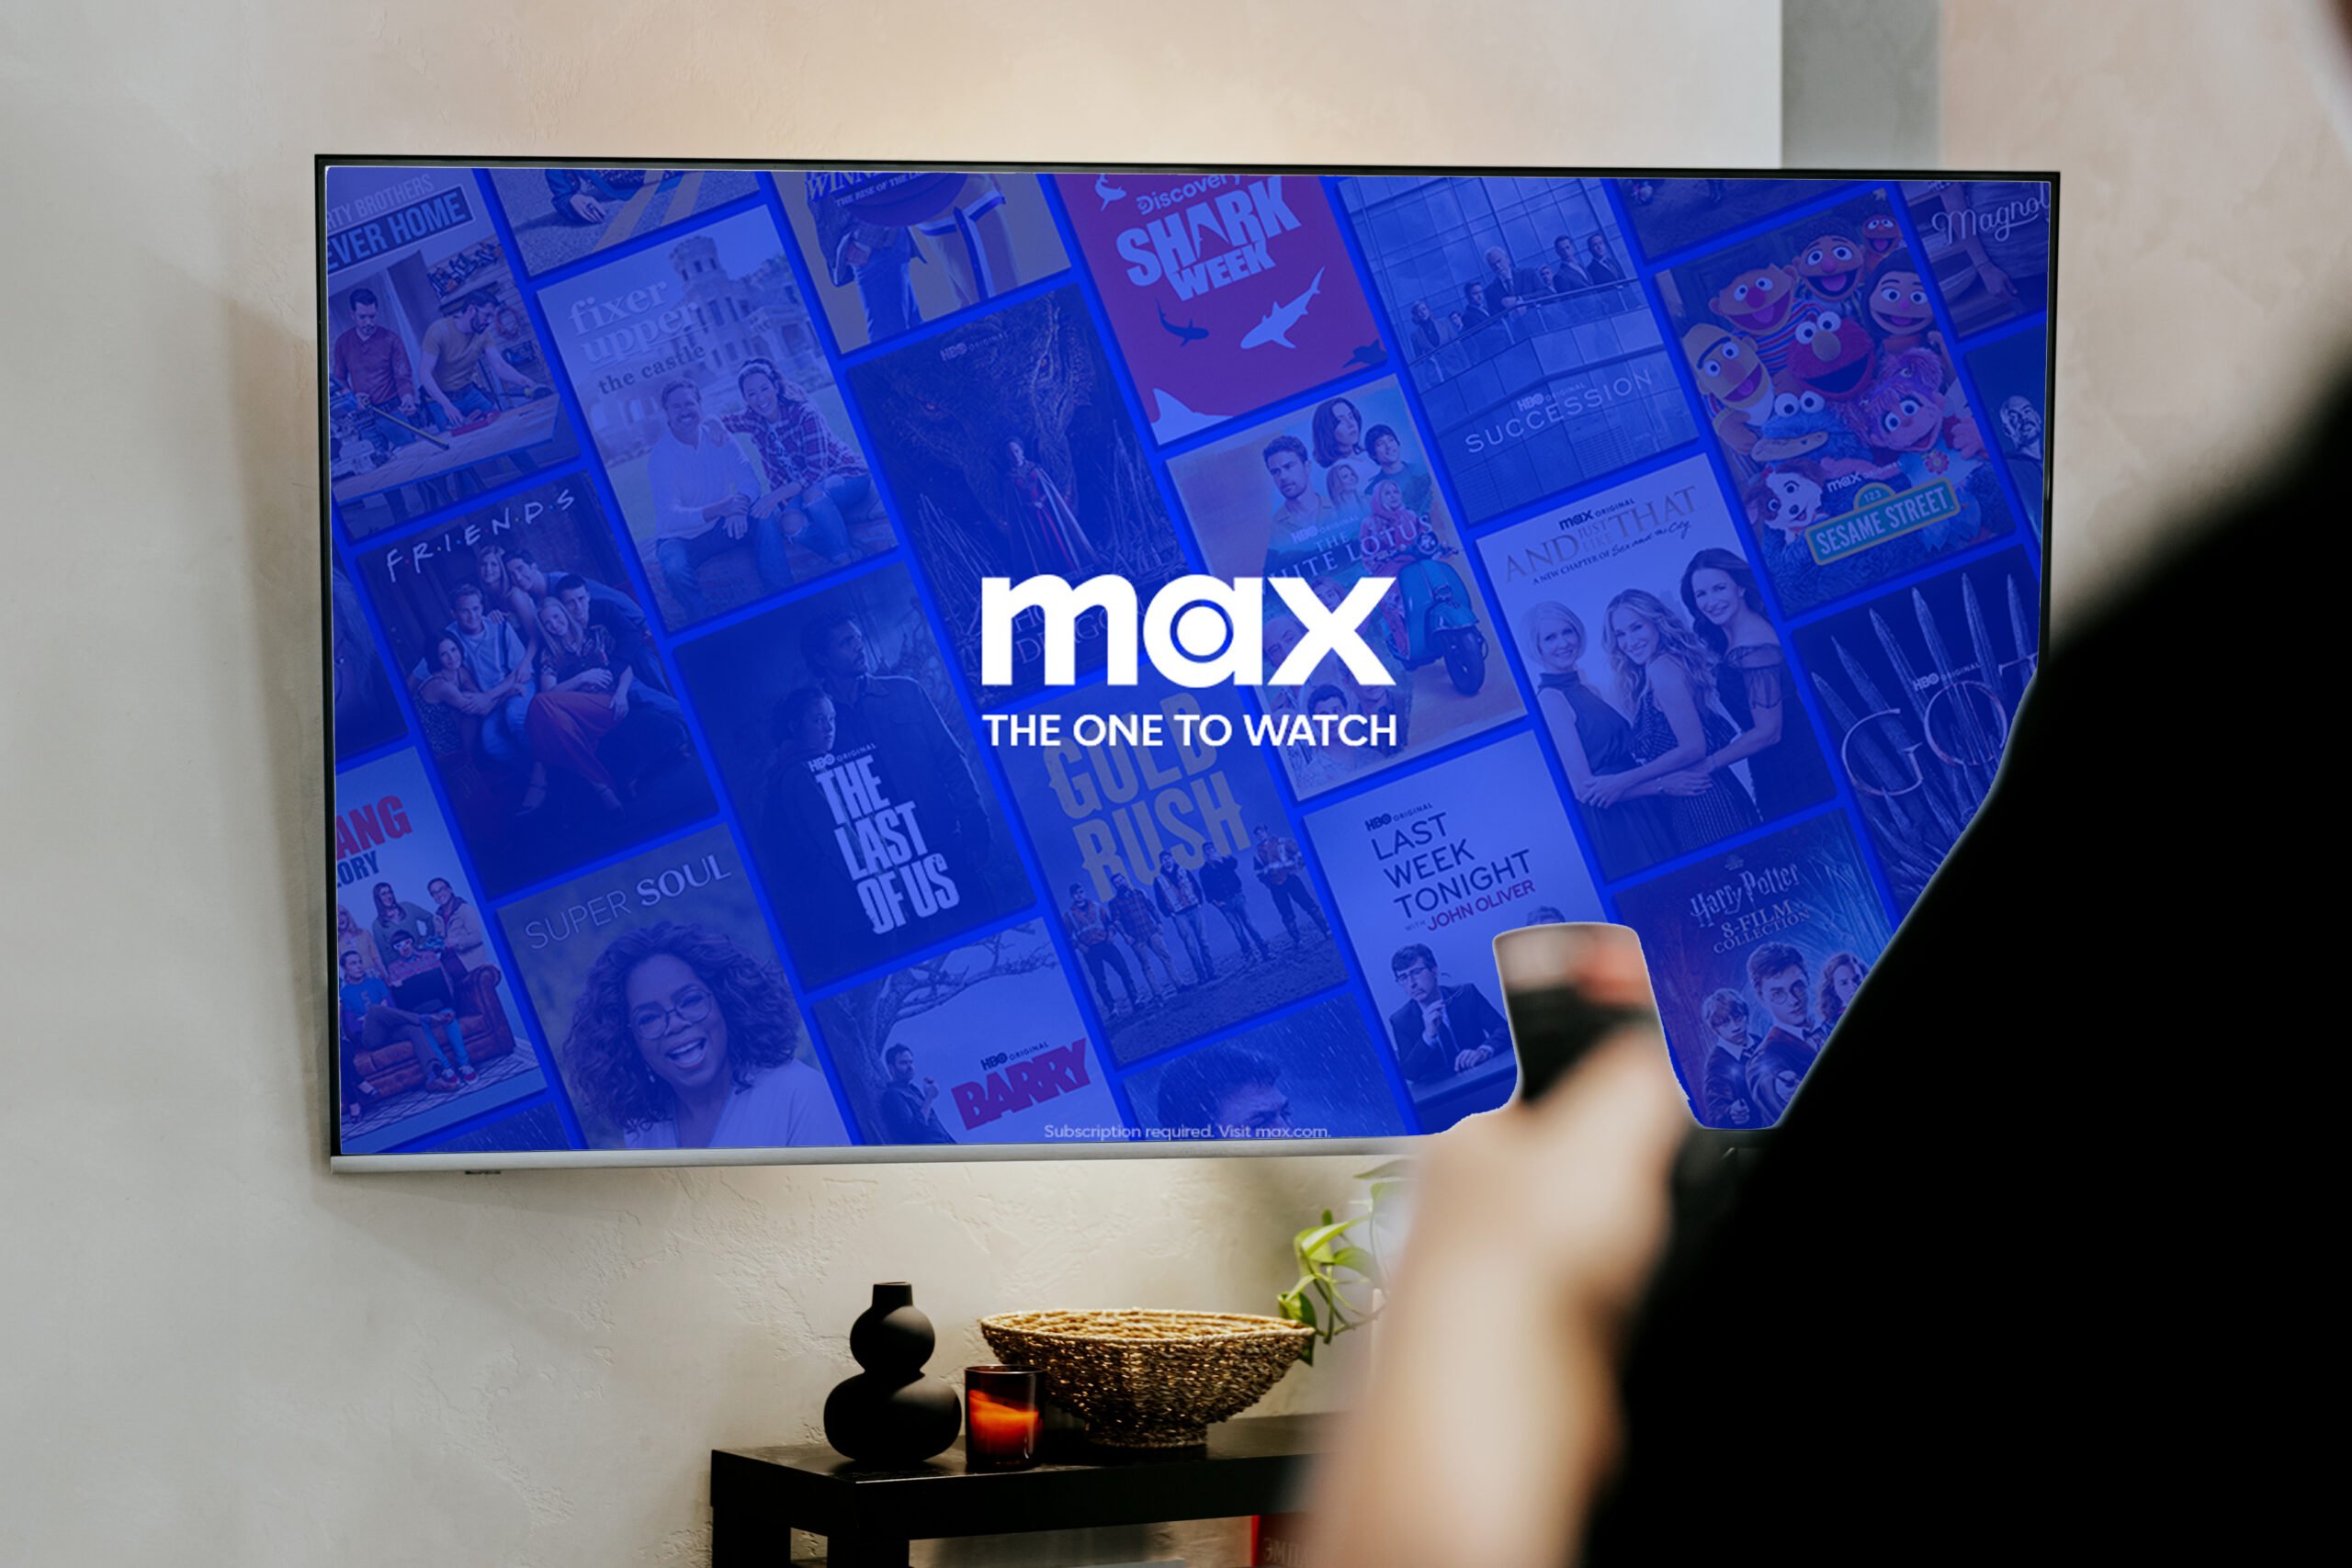 Telewizor z platformą Max w trybie ekranu głównego, wyświetlający różne programy telewizyjne i filmy; w tle widać rękę trzymającą pilot.